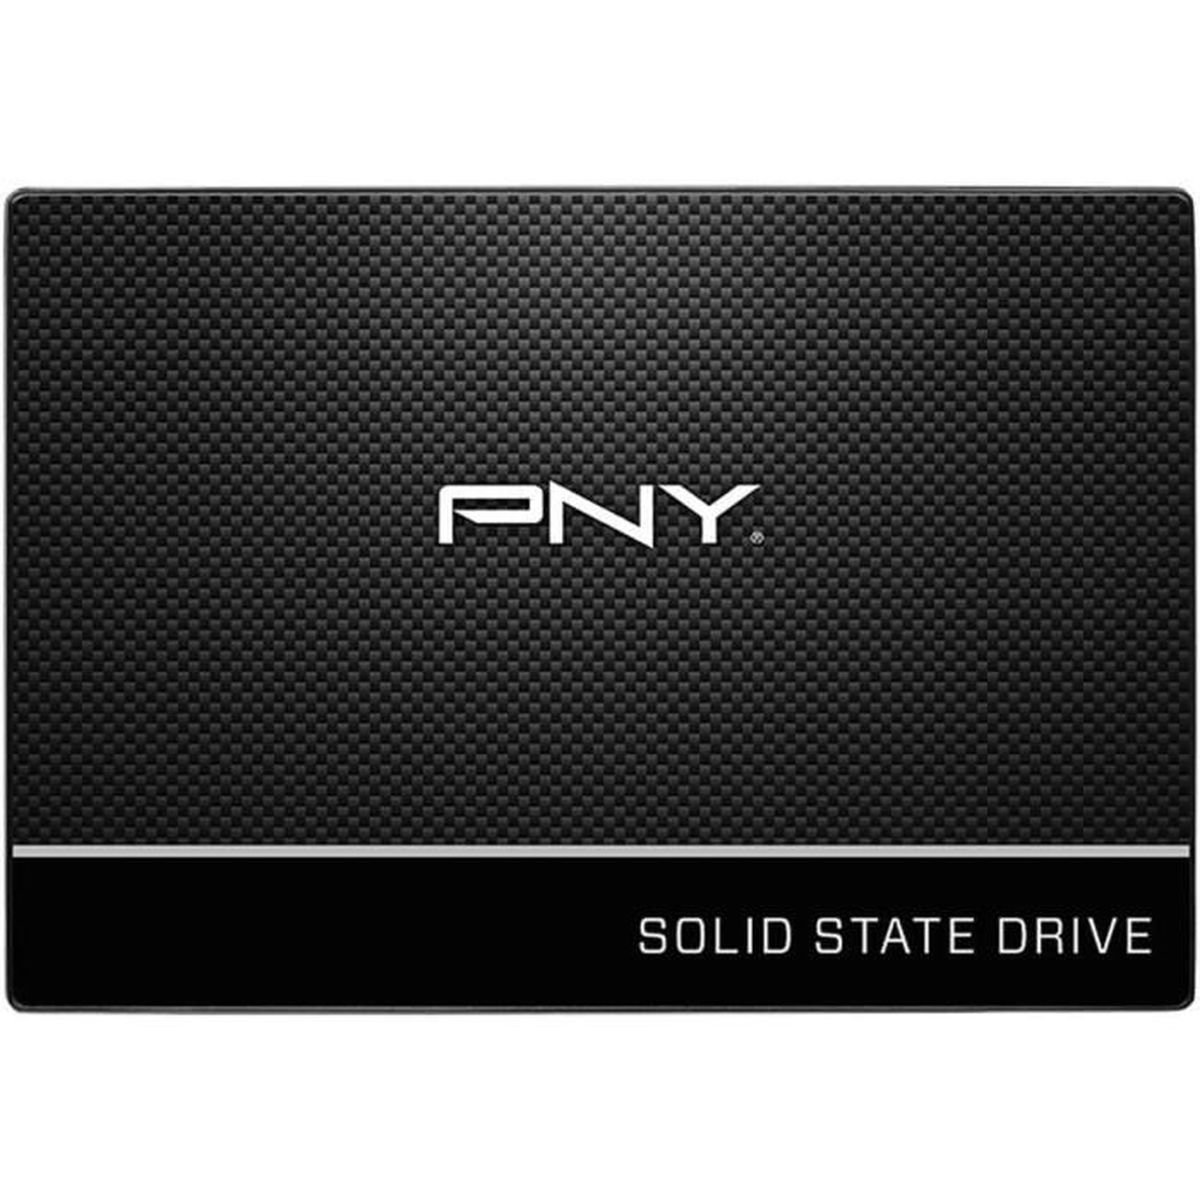 SSD7CS900-500-RB, GB, PNY intern 500 SSD,